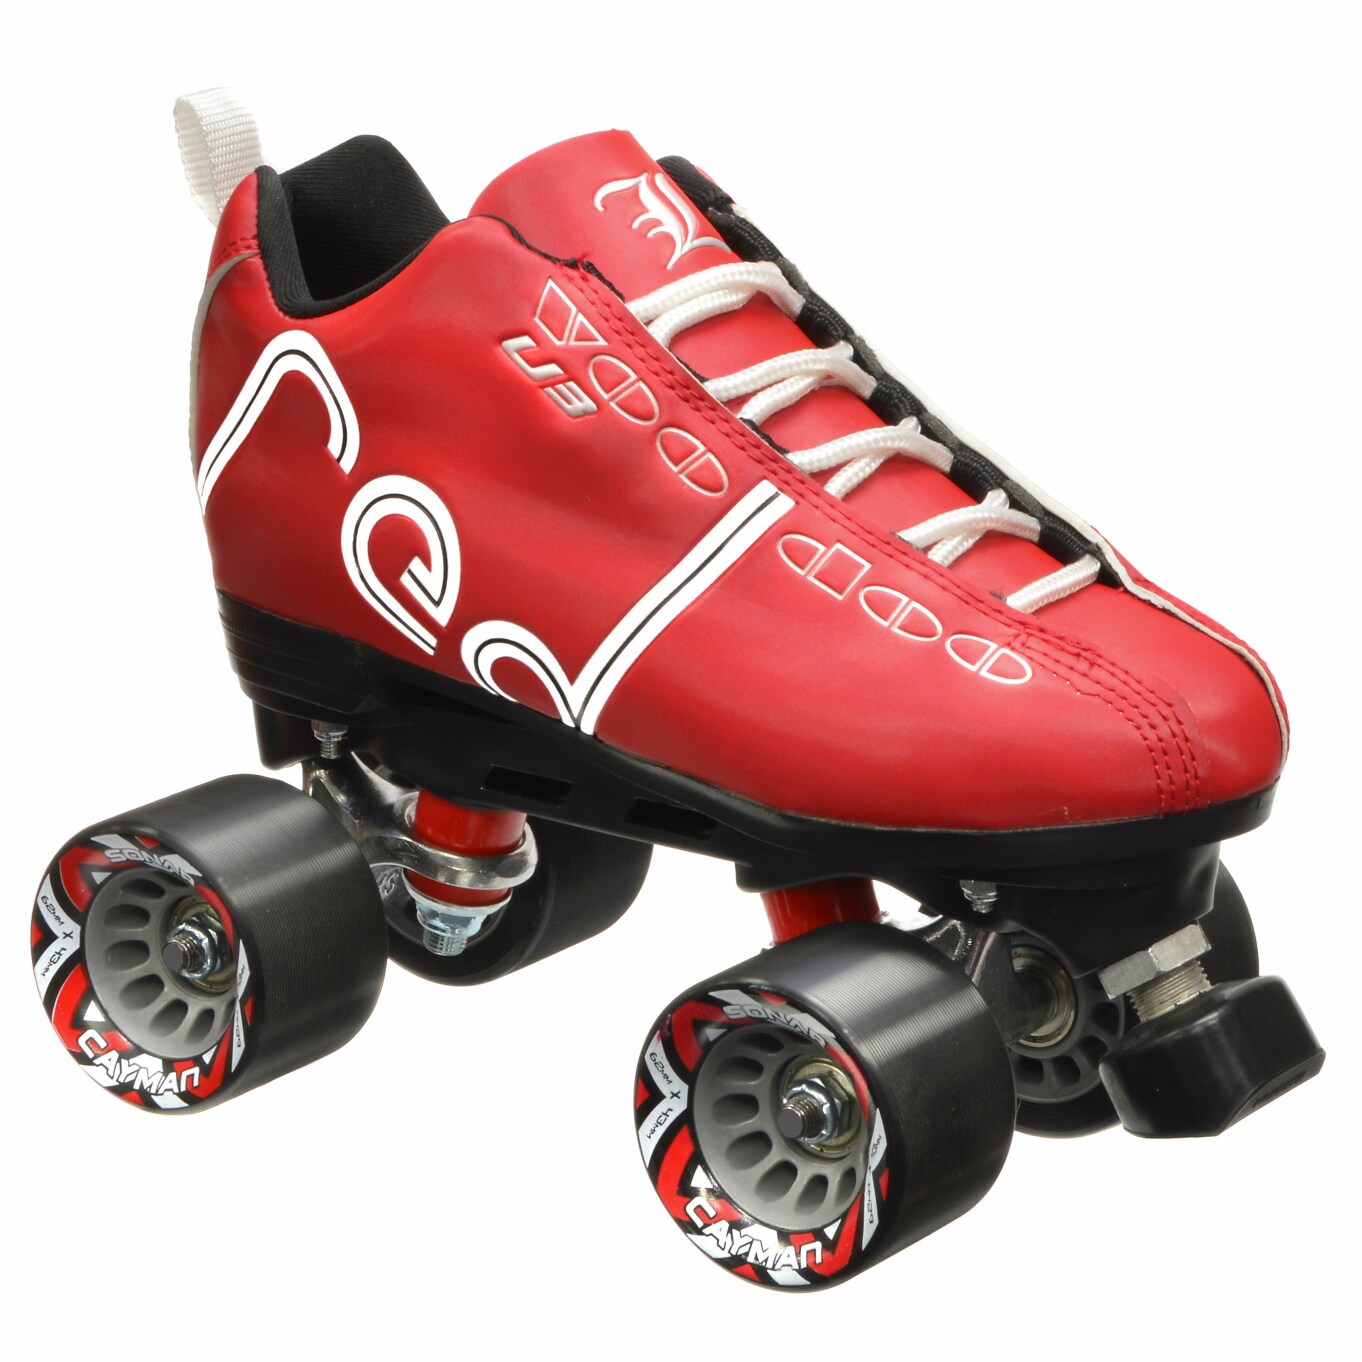 Labeda Voodoo U3 Black red roller skates, Men's size 6 Sonar Cayman  Wheels